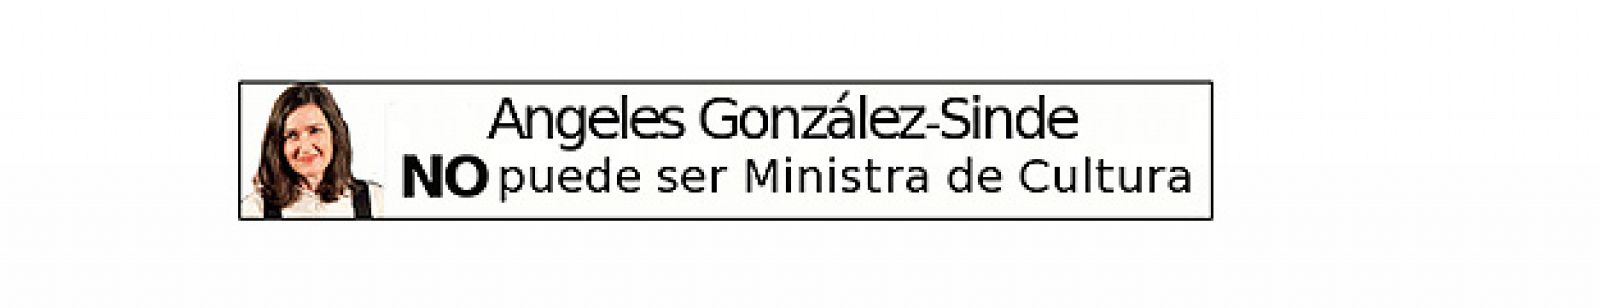 Imagen de un banner contra Sinde que aparece en la página web de la Asociación de Internautas (AI).